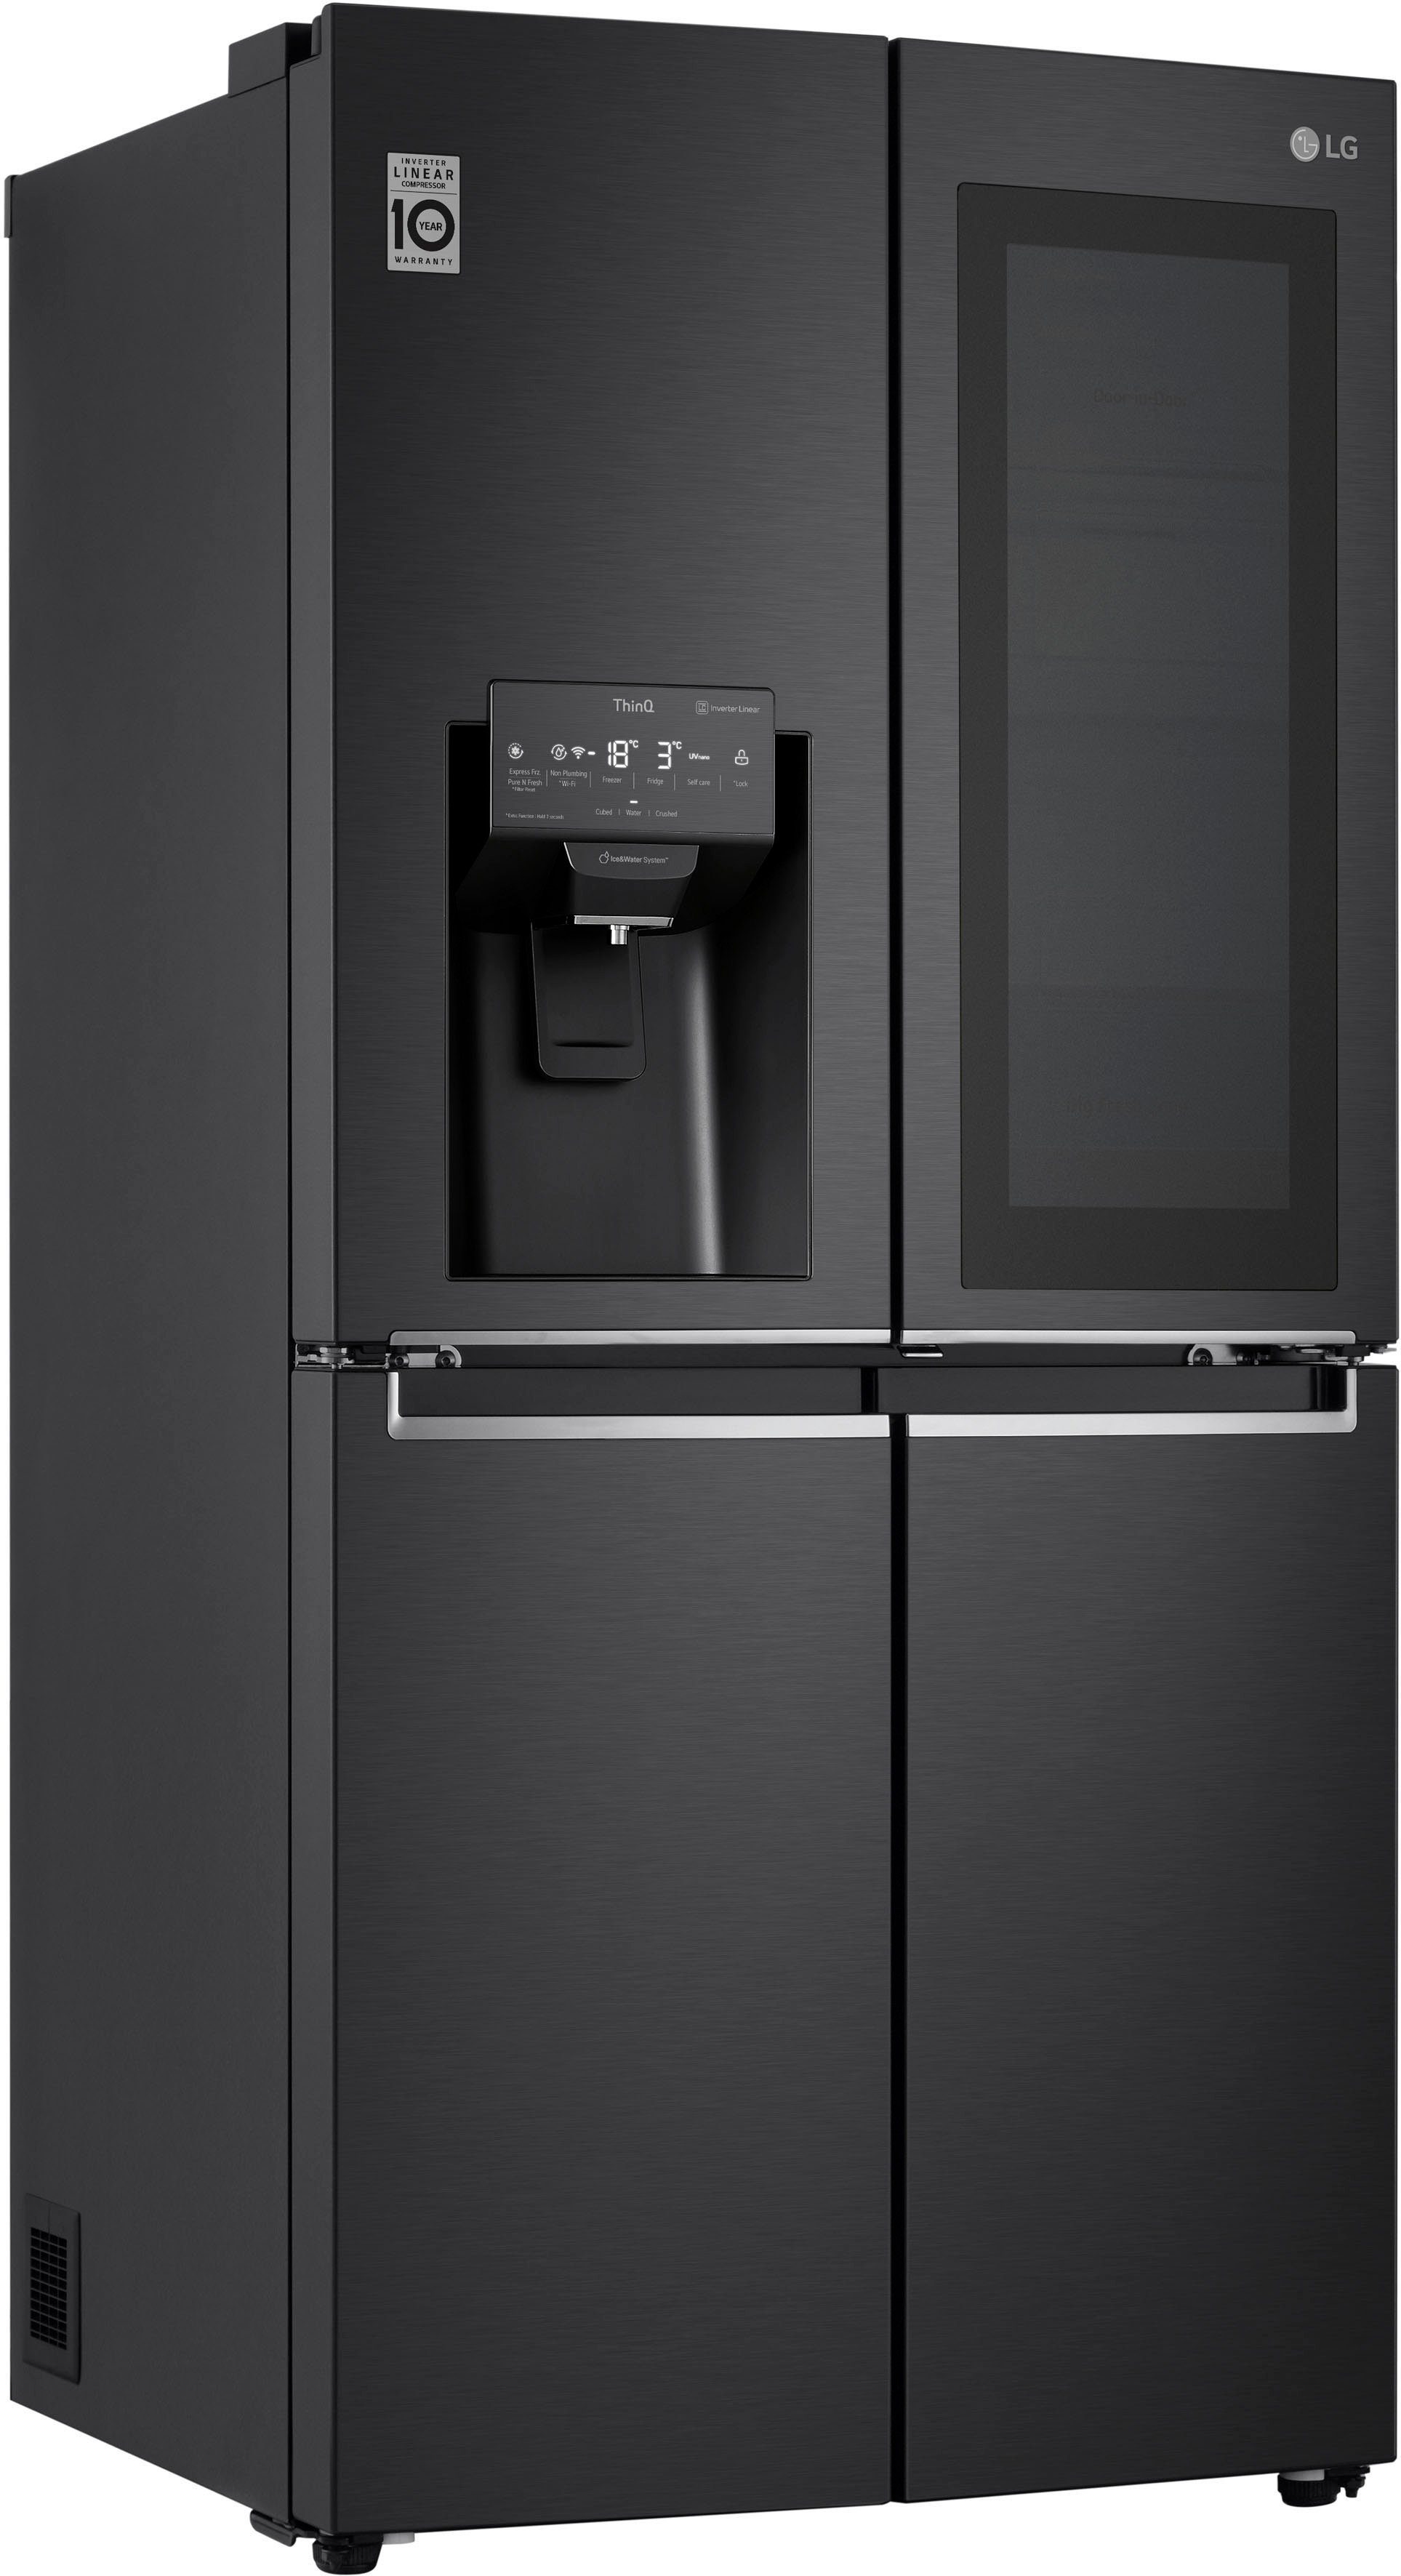 Günstige Kühlschränke online kaufen » Kühlschränke SALE | OTTO